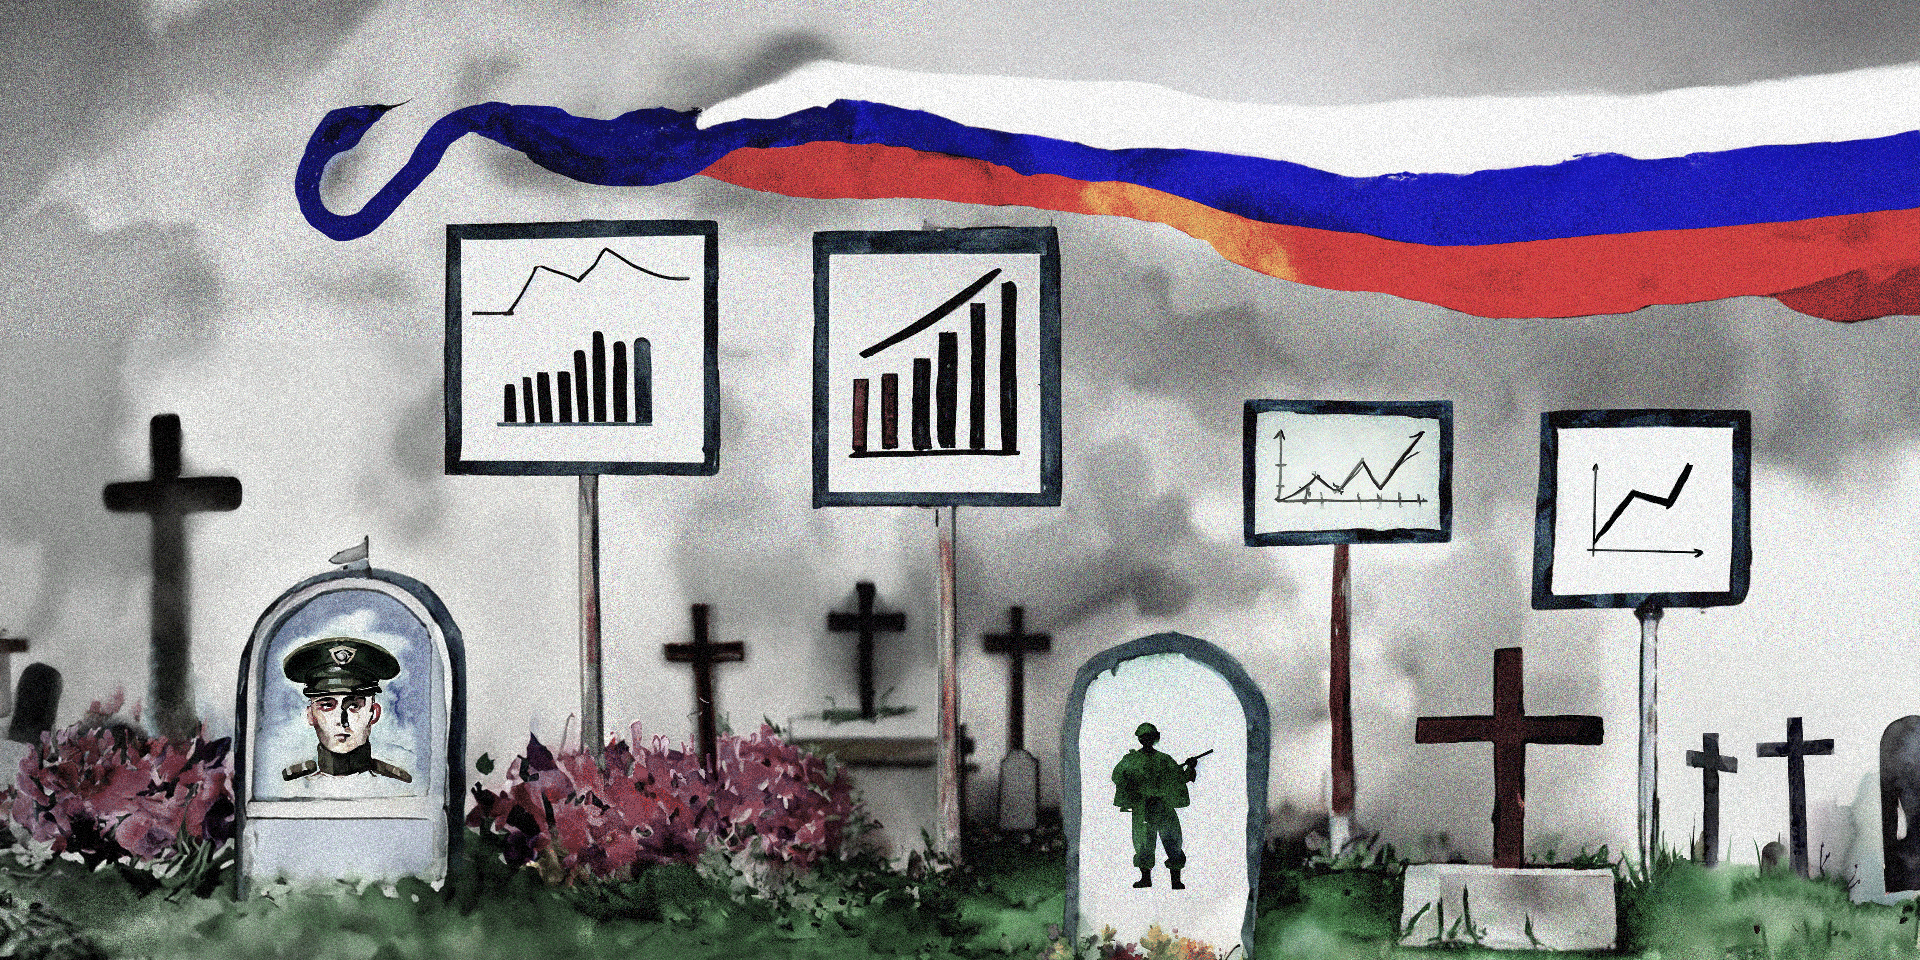 Журналисты и ученые оценивают российские потери на войне от 18 до 24 тысяч человек в 2022 году. Какая оценка точнее?